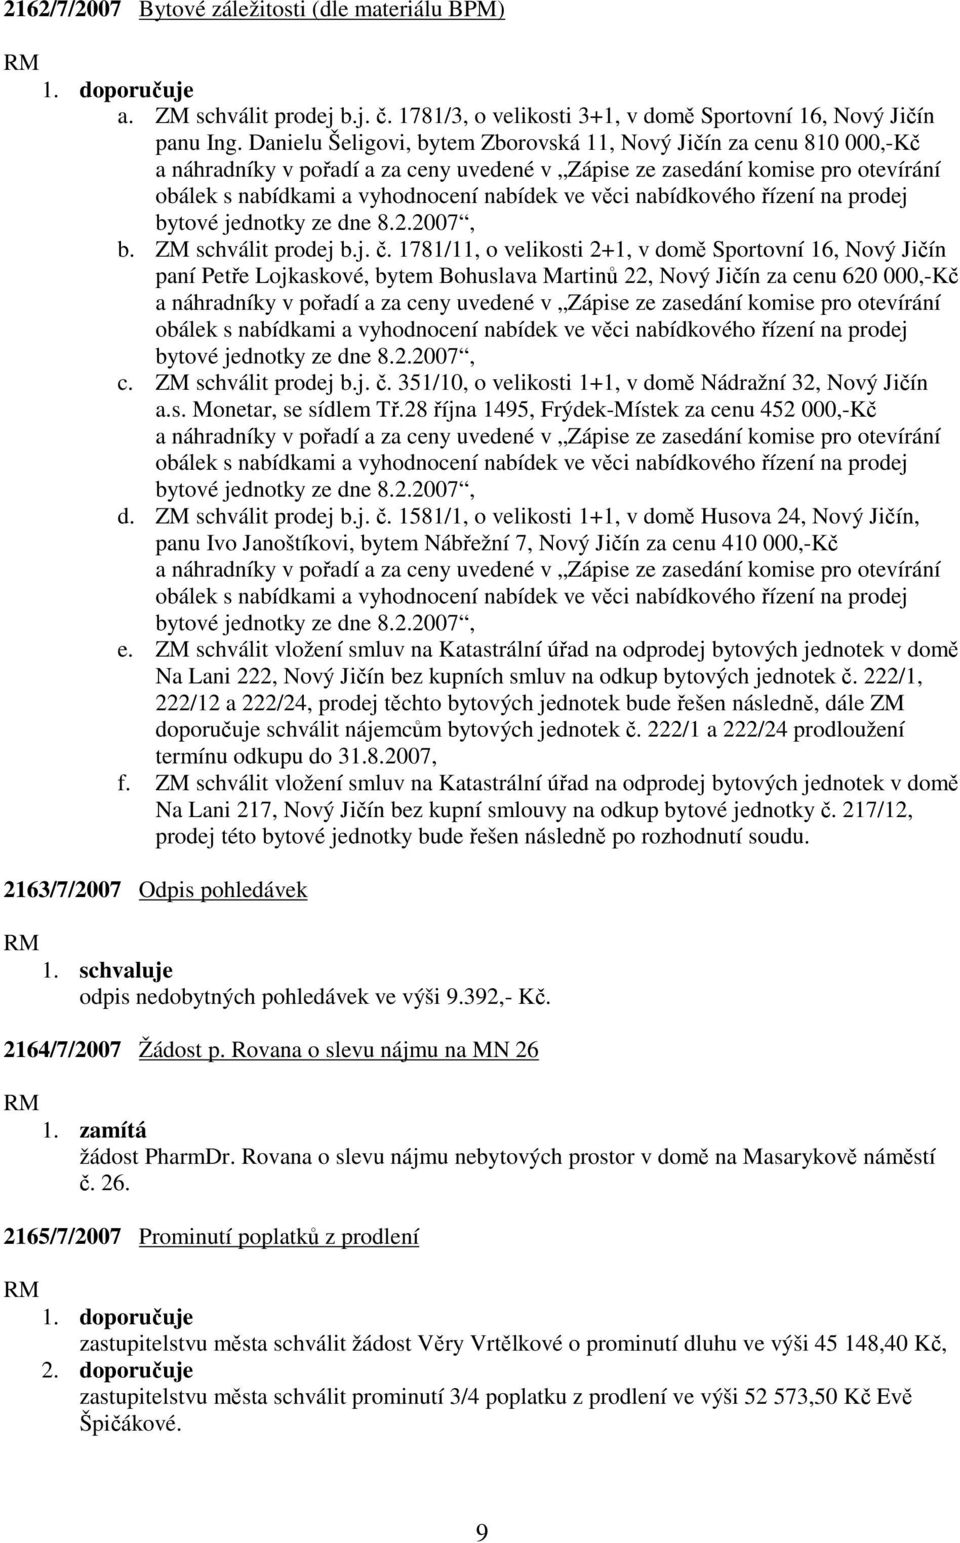 nabídkového řízení na prodej bytové jednotky ze dne 8.2.2007, b. ZM schválit prodej b.j. č.